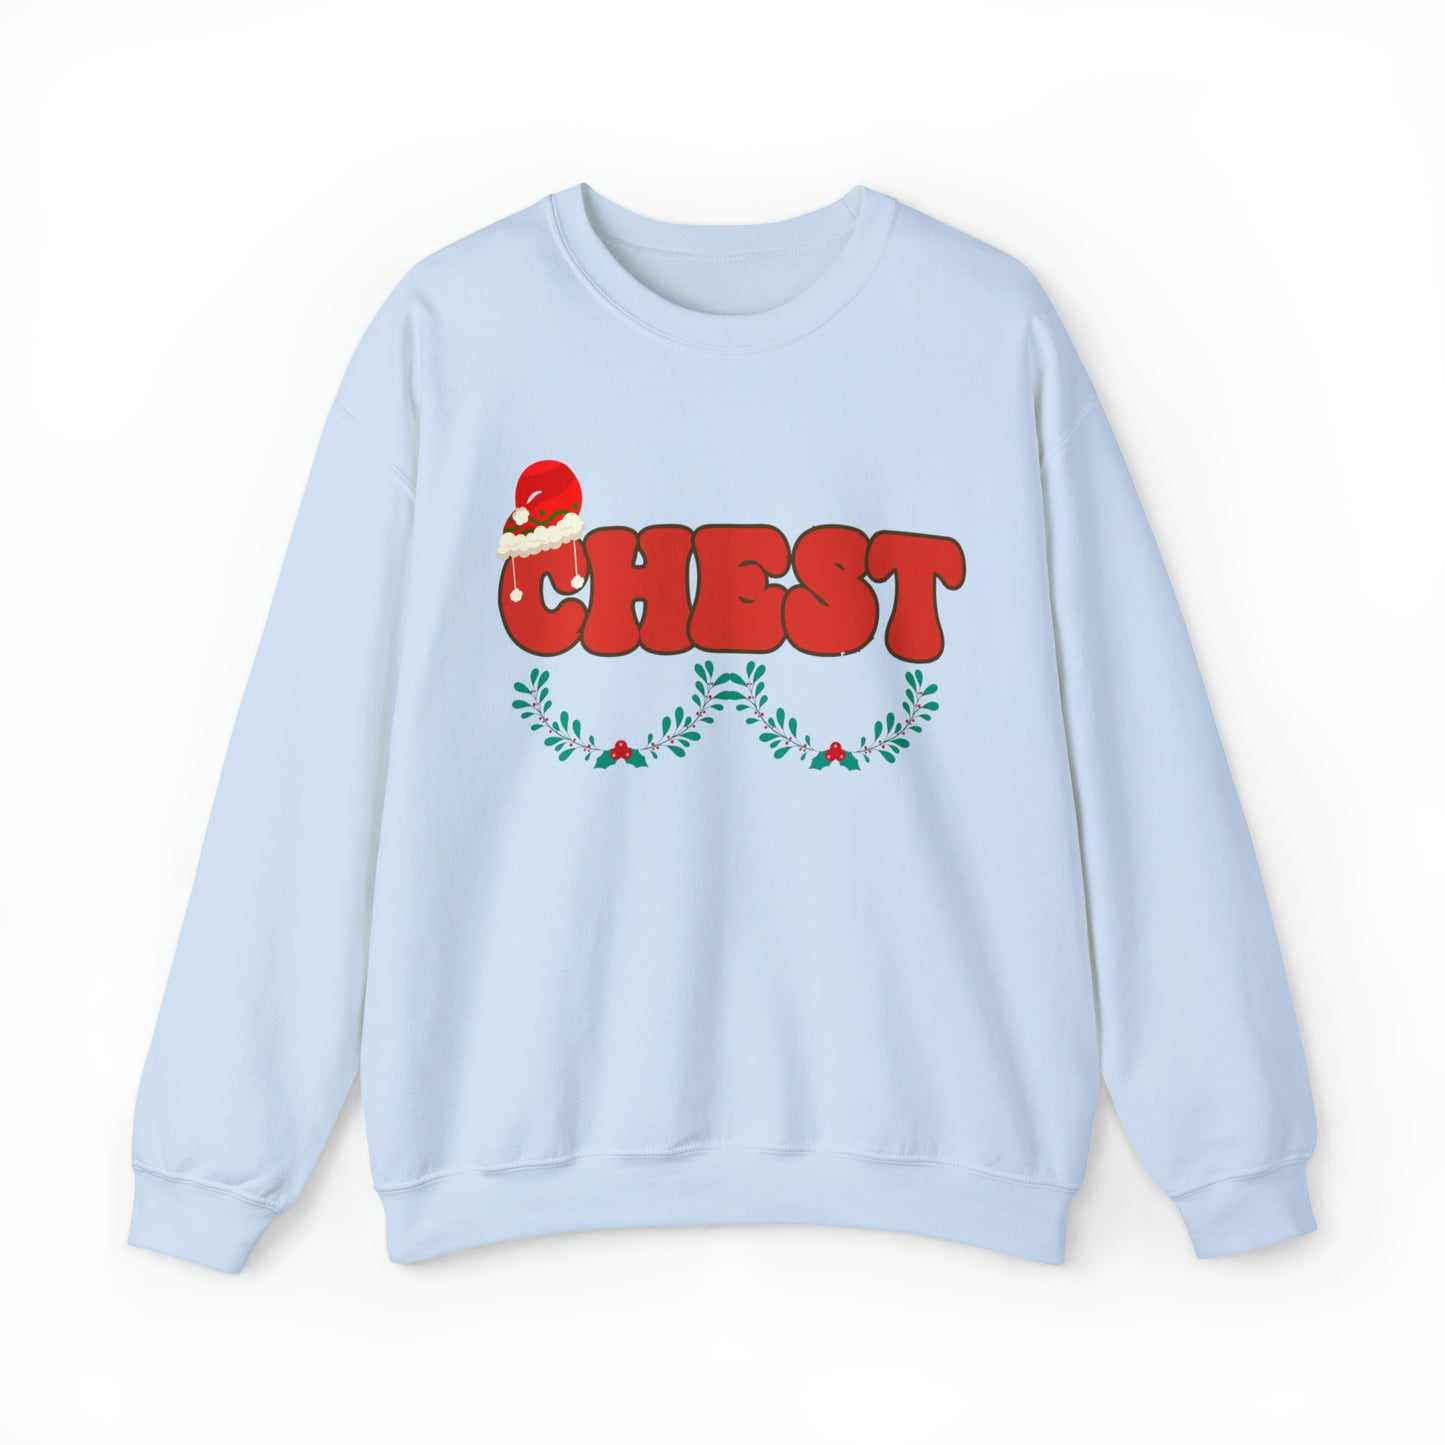 Couple Chest Nuts Crewneck Sweatshirt, Christmas Holiday Sweatshirt, Christmas Gift for Couples, Funny Matching Christmas Sweatshirt, SW950